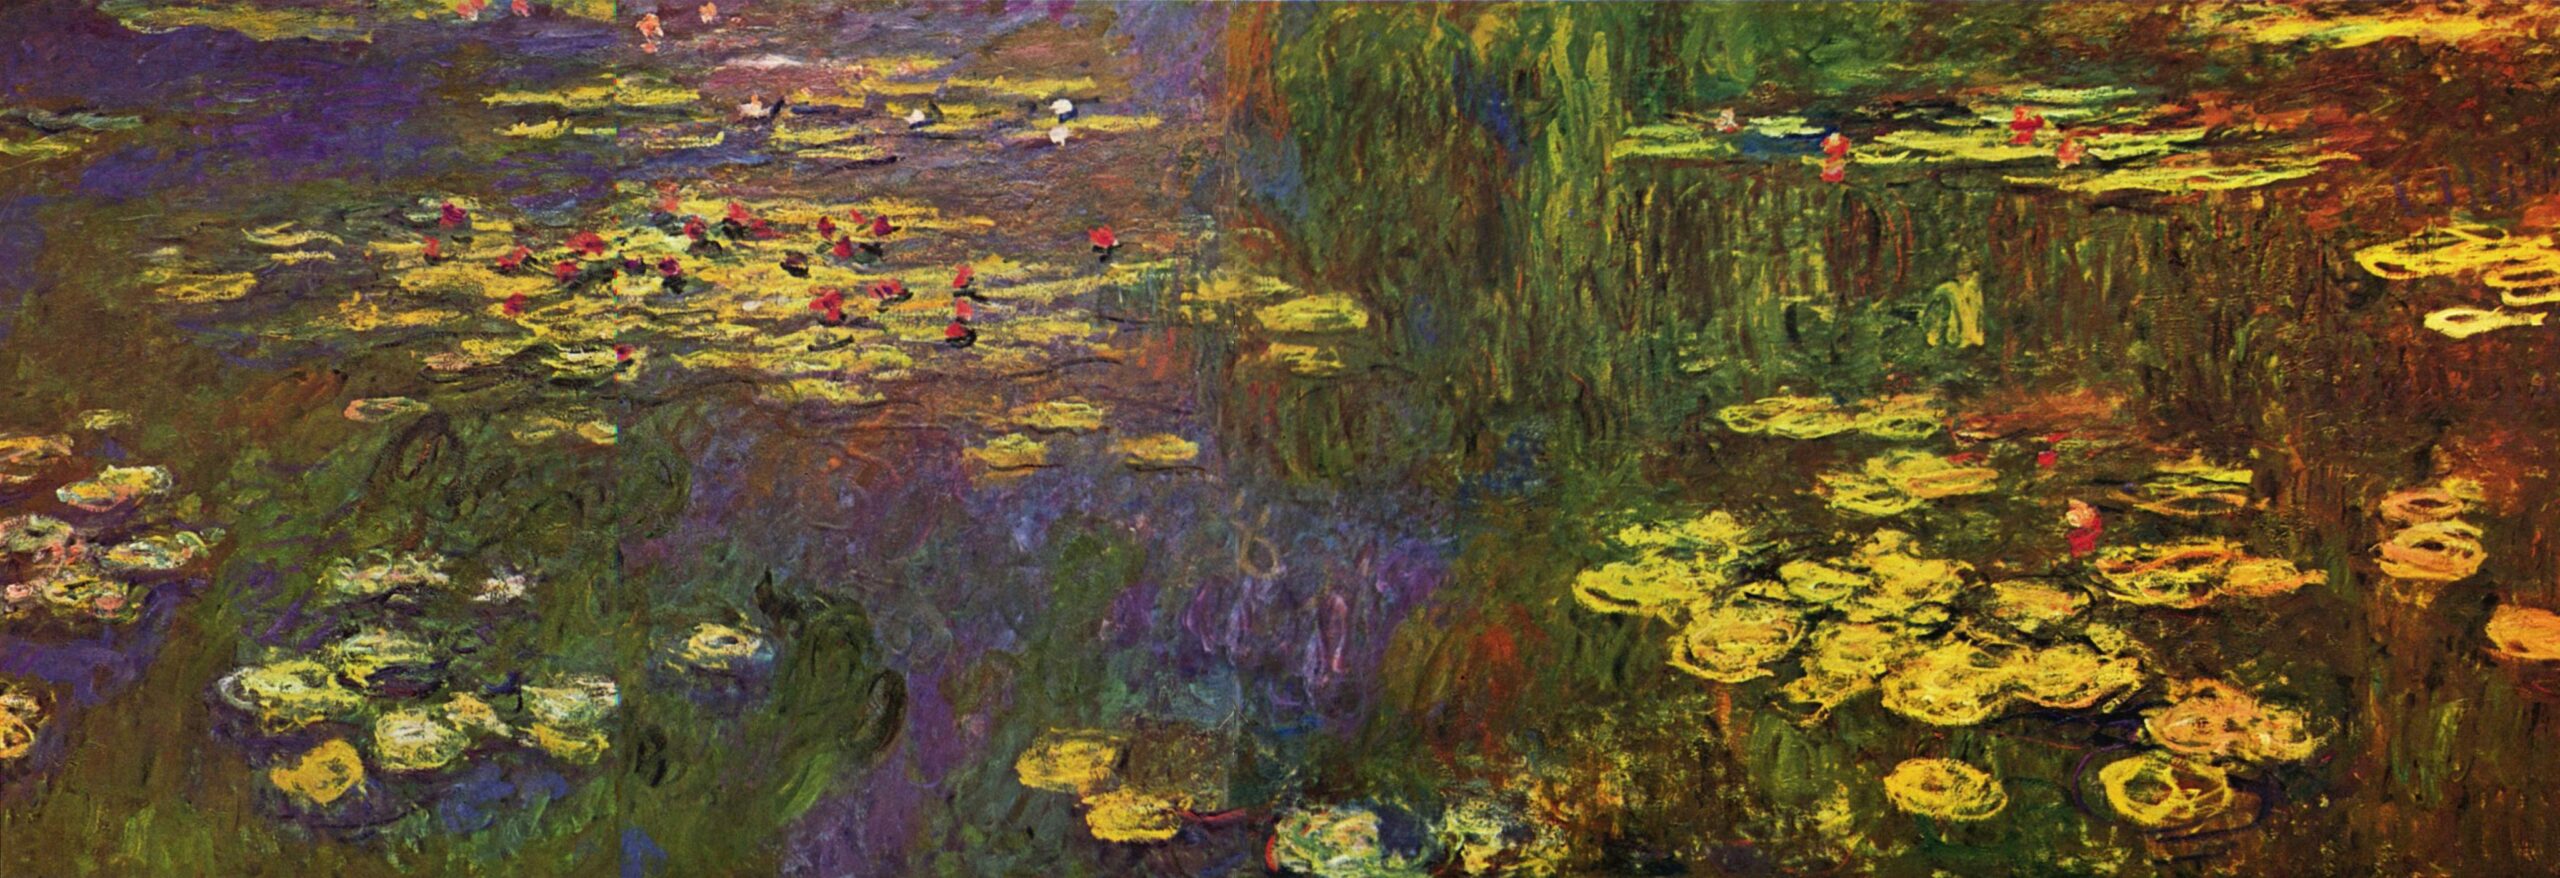 Les Nymphéas de Claude Monet - oeuvre offerte à la France au lendemain de l'armistice de 1918 comme symbole de paix.